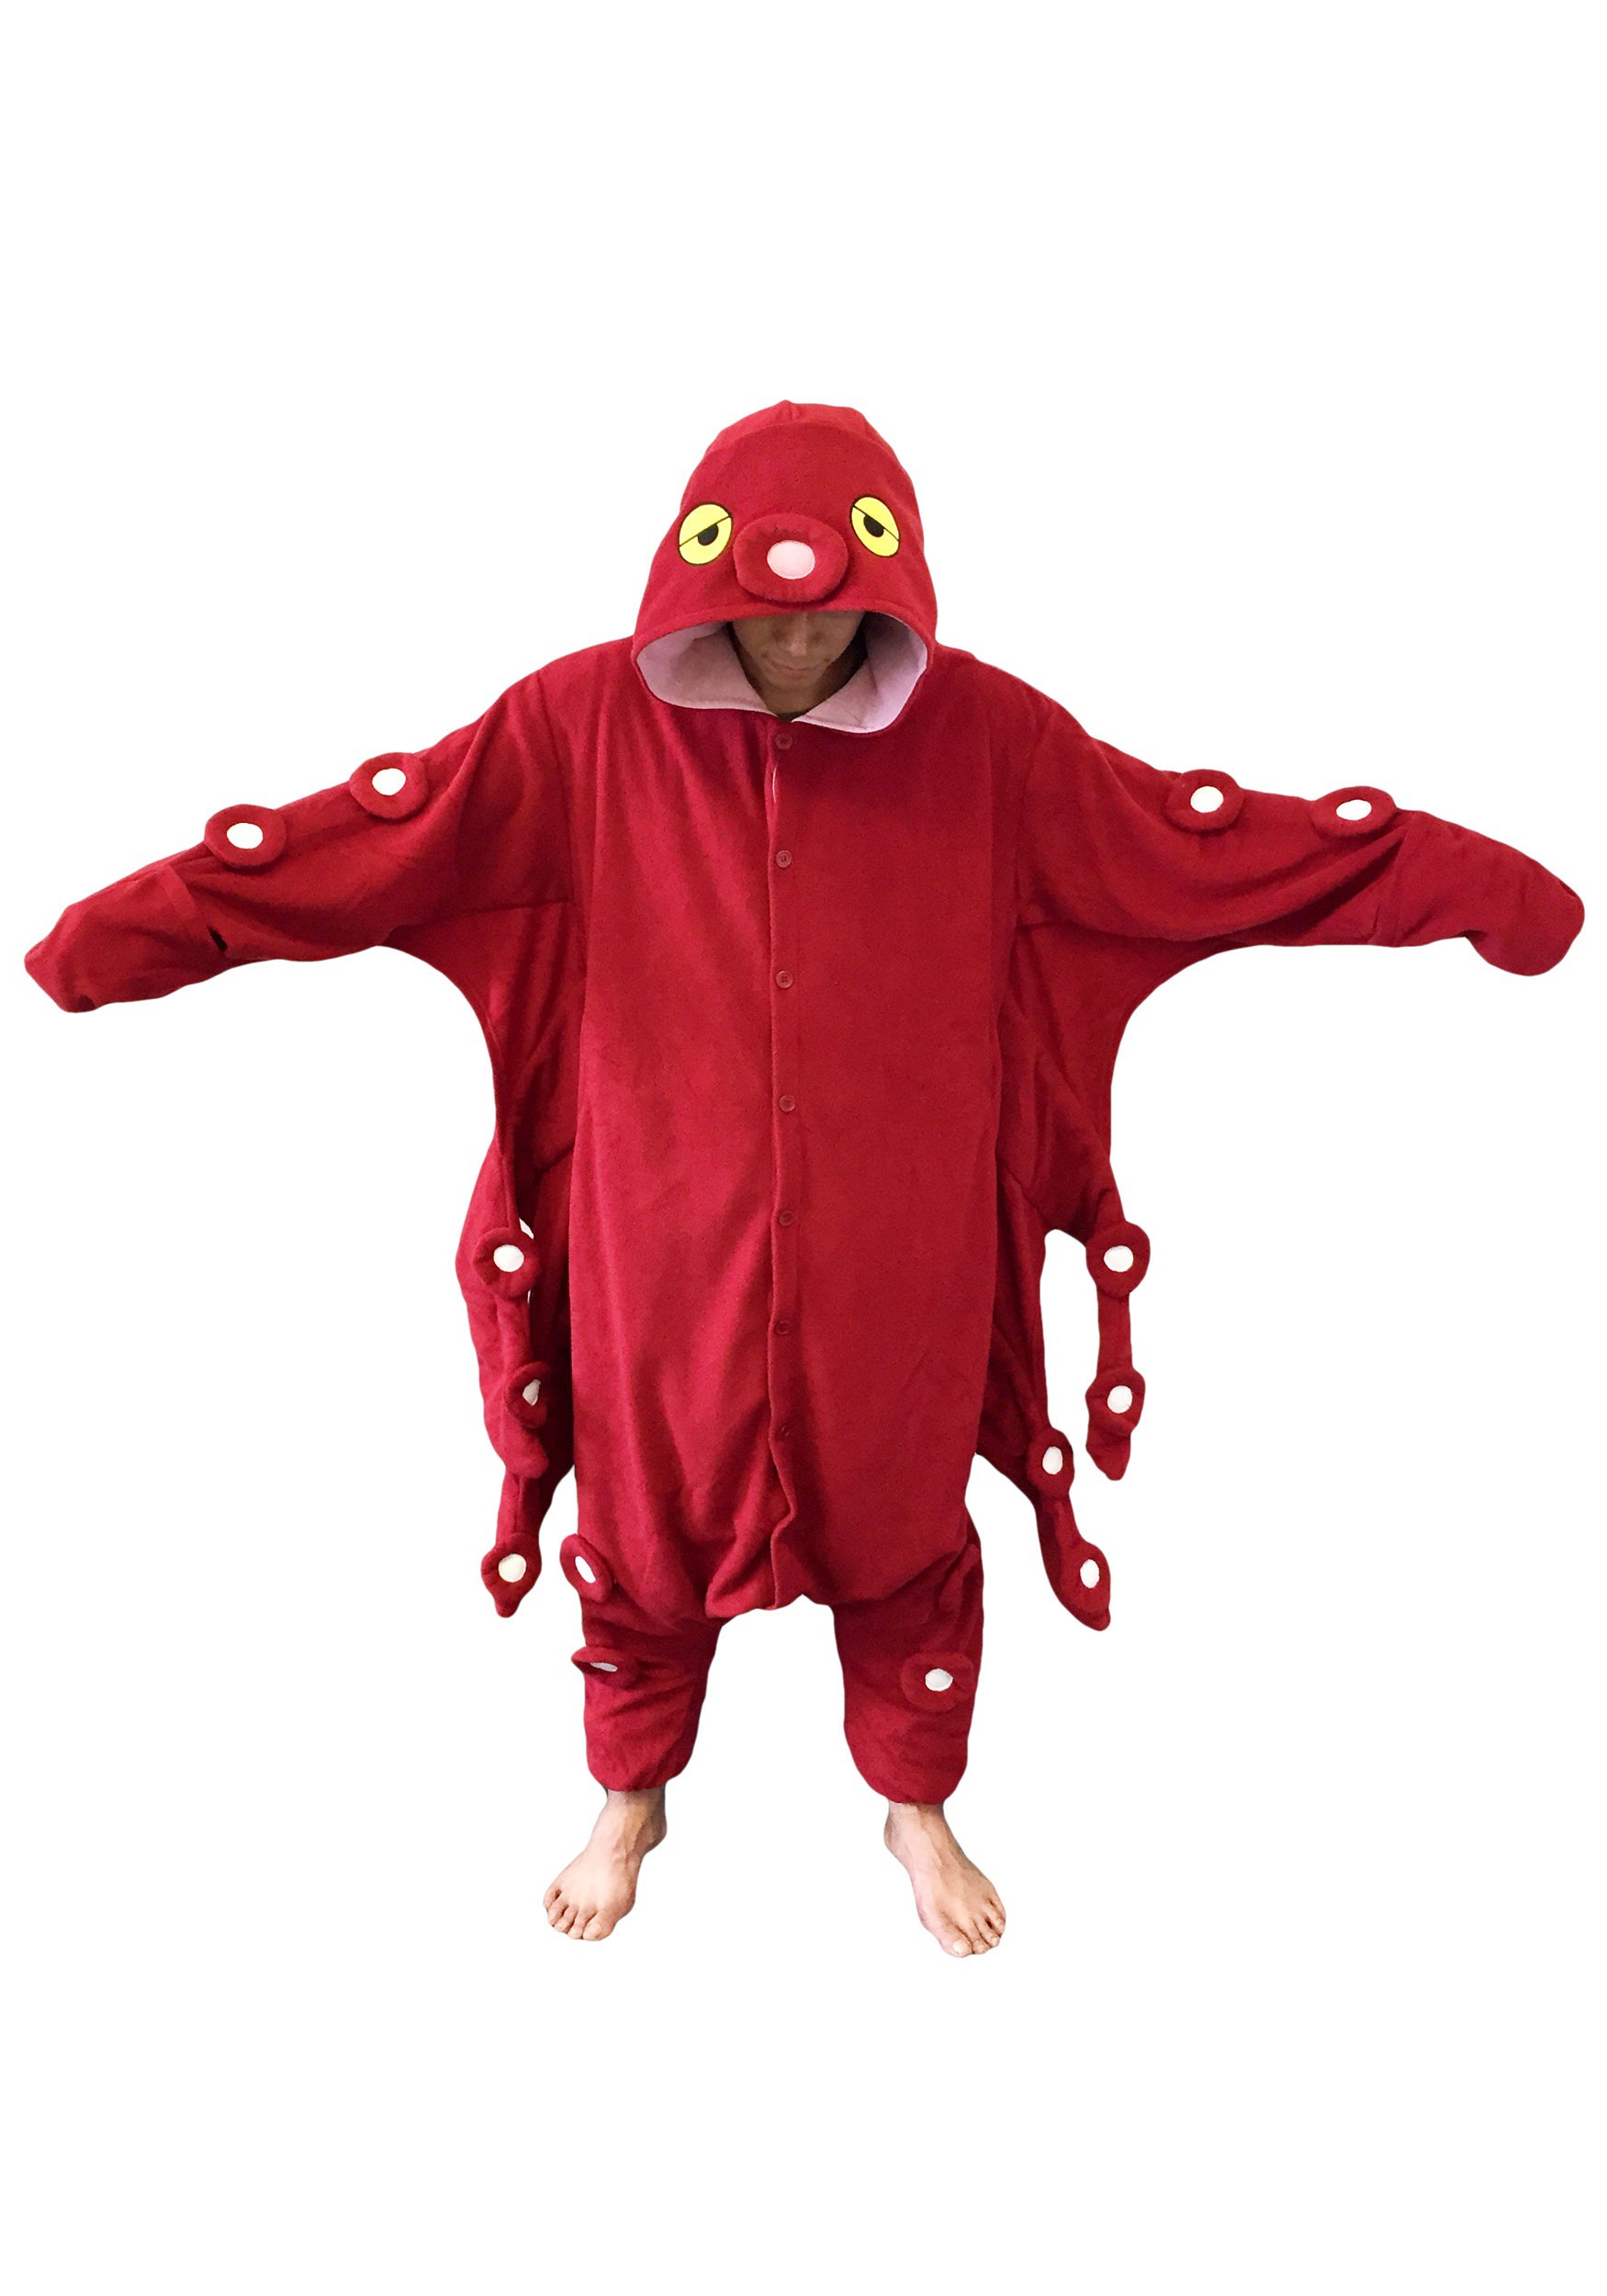 Red Octopus Adult Kigurumi Pajamas Costume